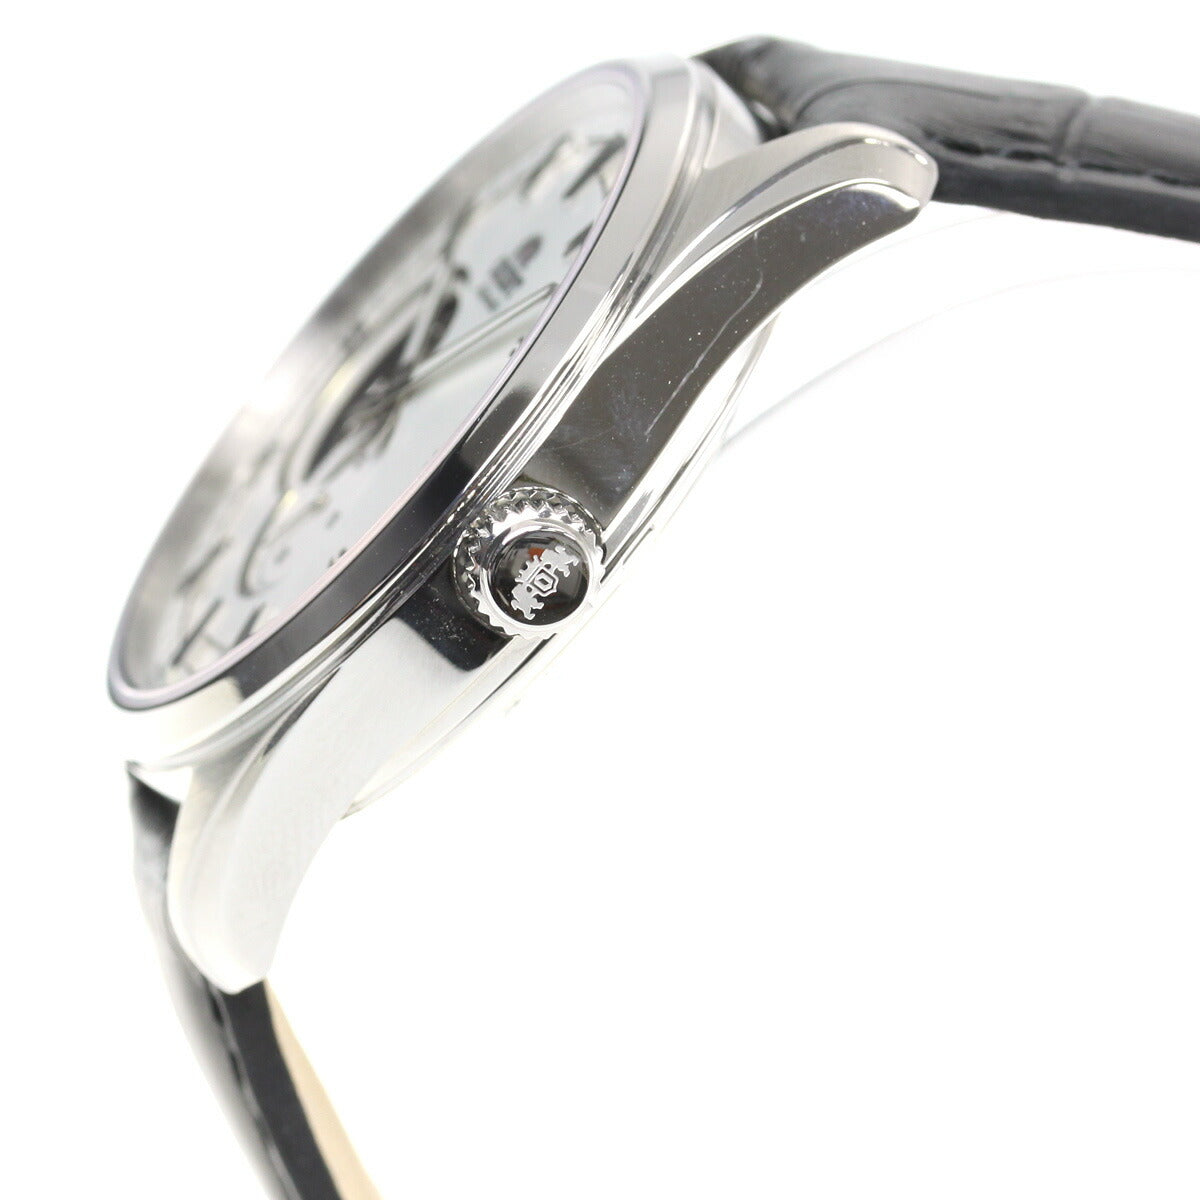 オリエント 腕時計 メンズ 自動巻き 機械式 ORIENT コンテンポラリー CONTEMPORARY セミスケルトン RN-AR0003S